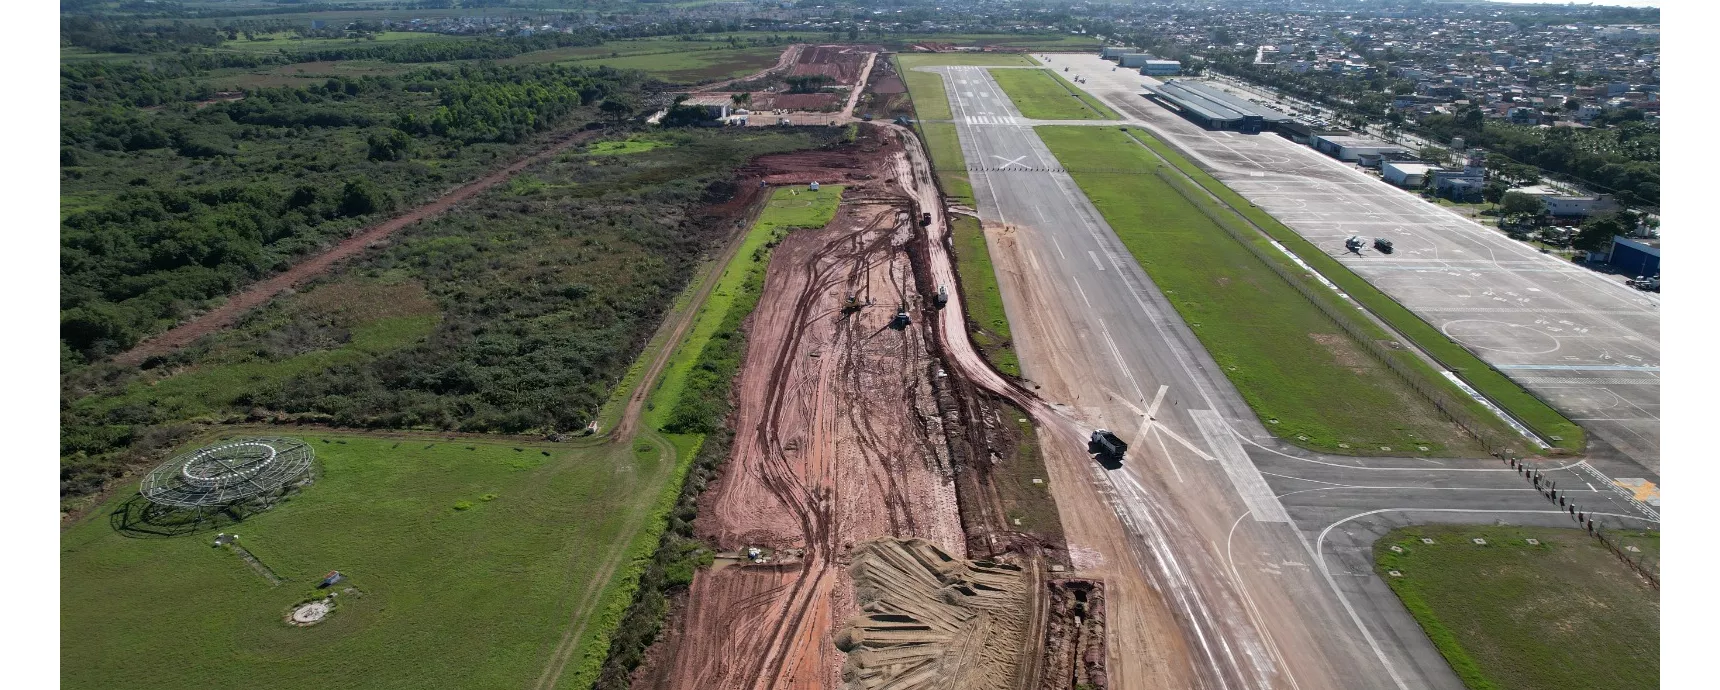 Der Flughafen Macaé wird nach Abschluss der Arbeiten mit zwei Start- und Landebahnen betrieben